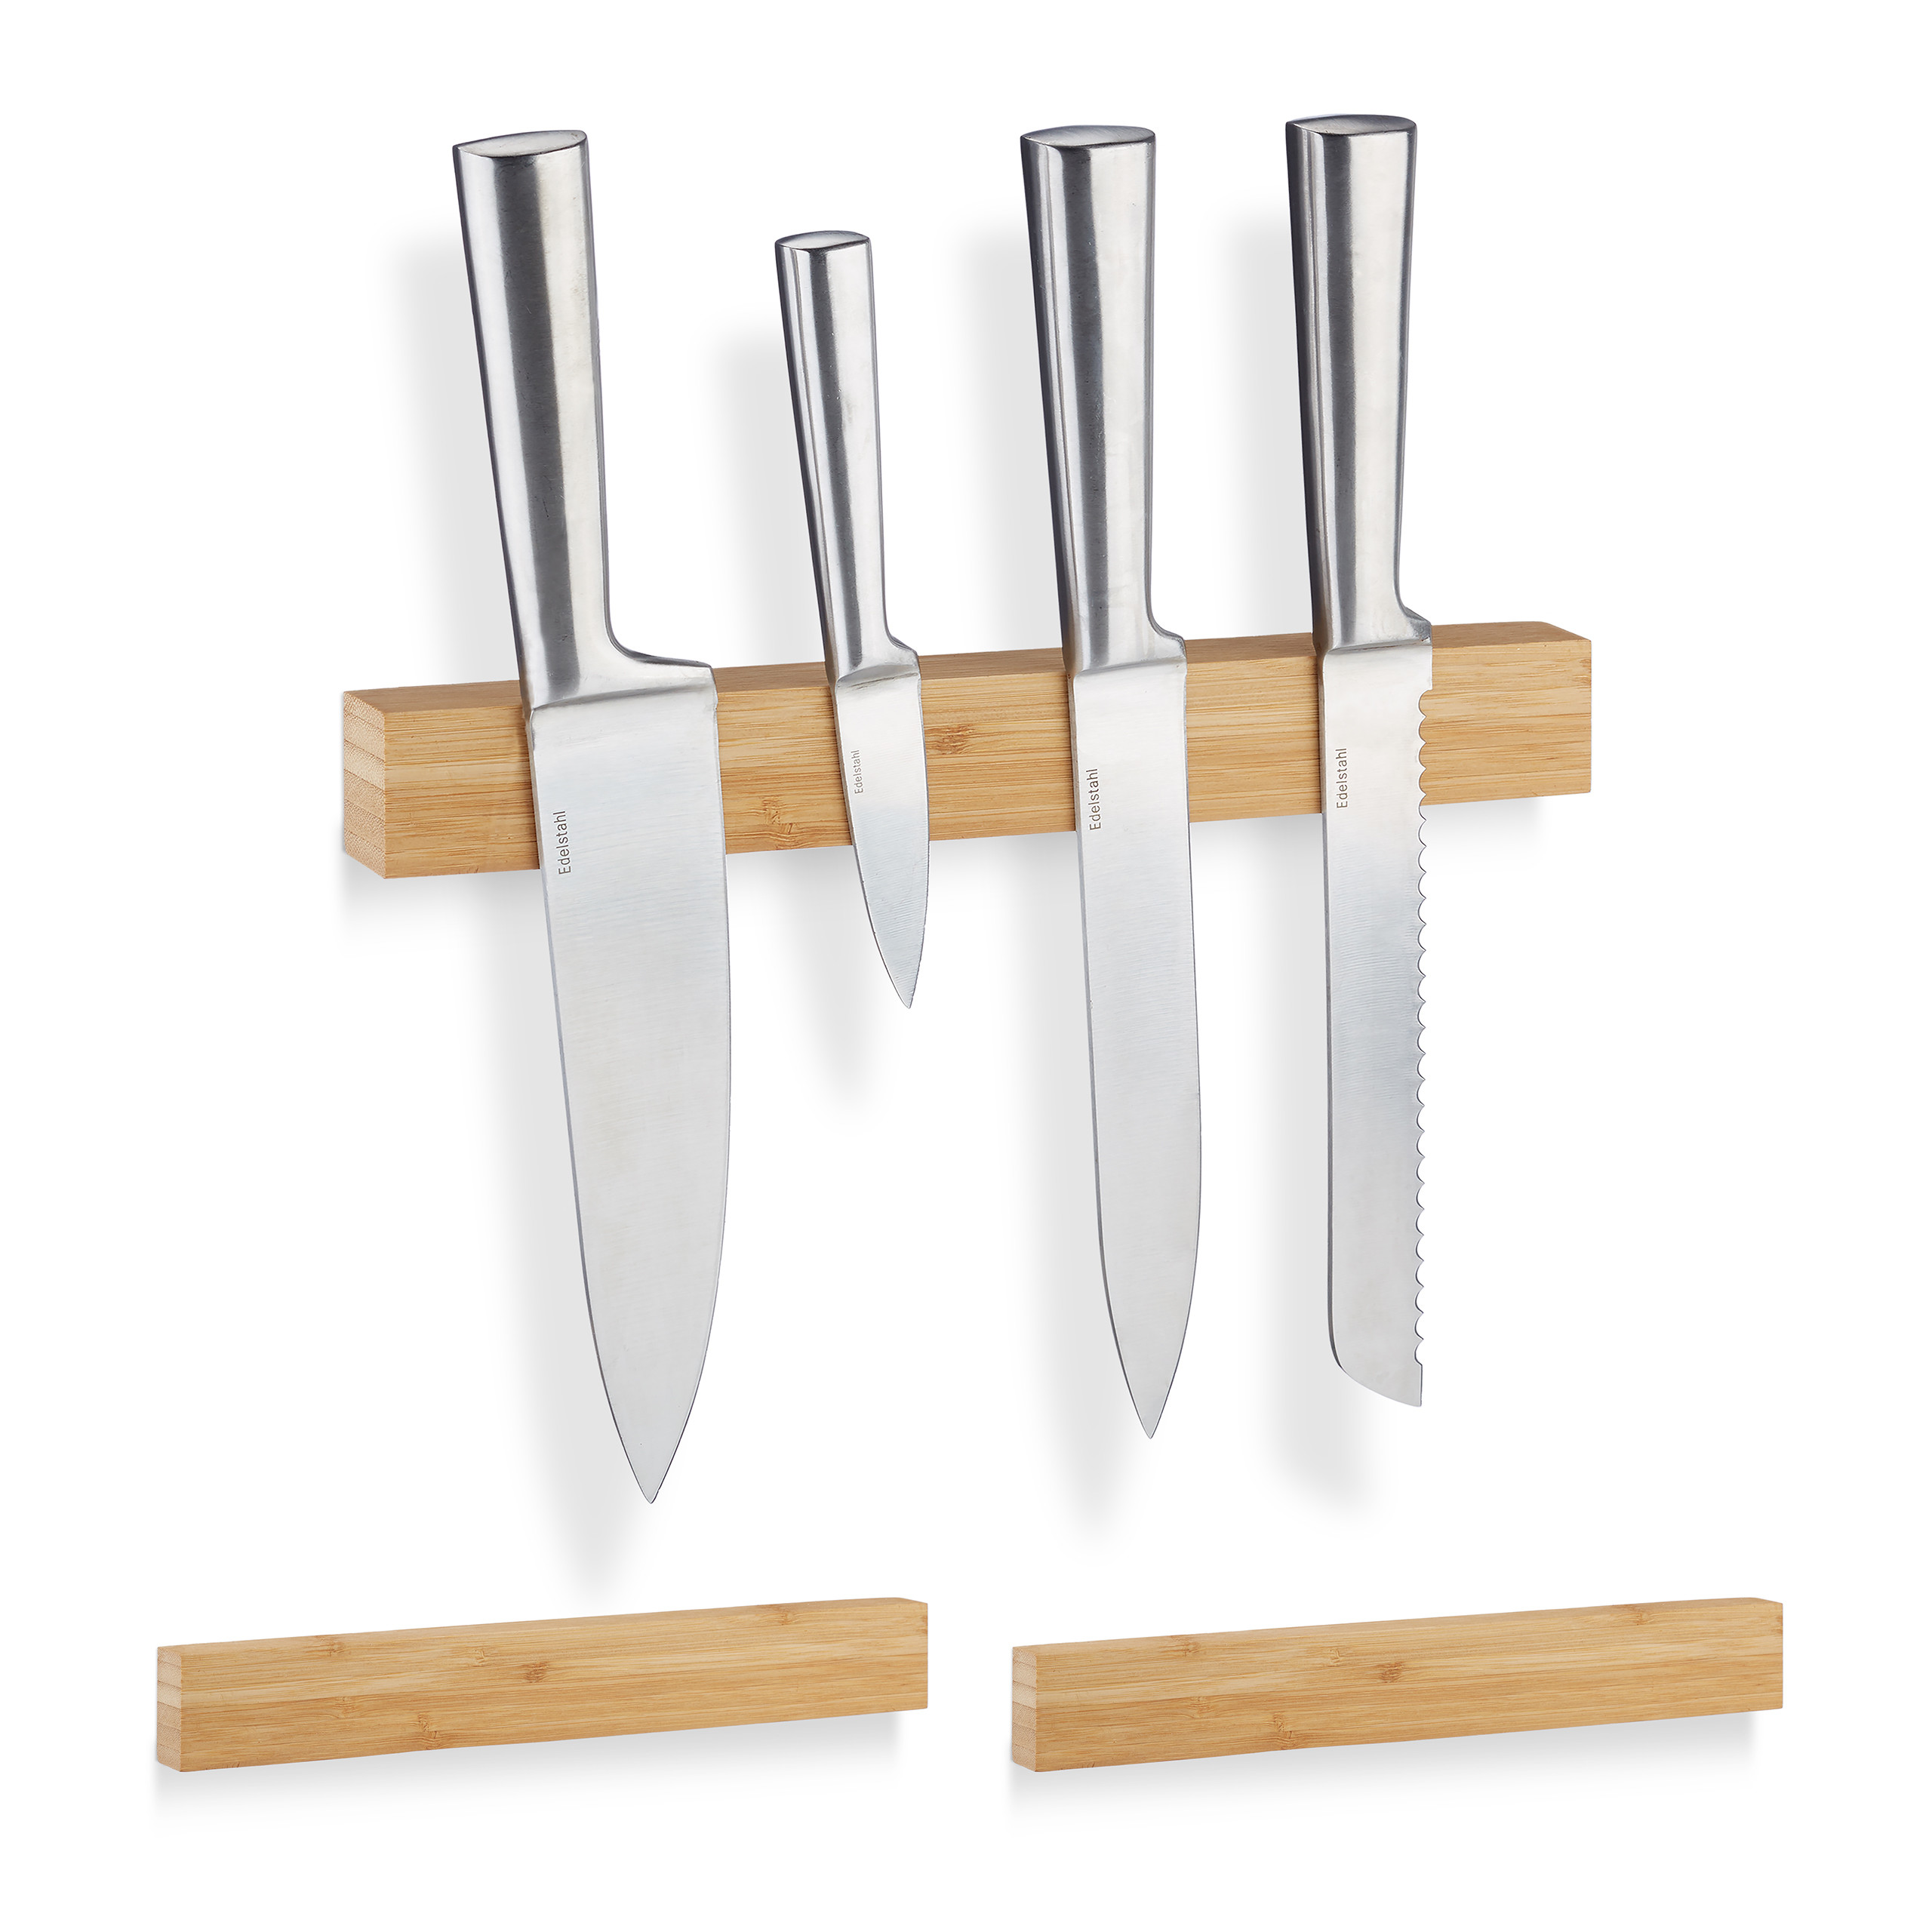 Relaxdays range couteaux de cuisine bambou, support couteaux pour